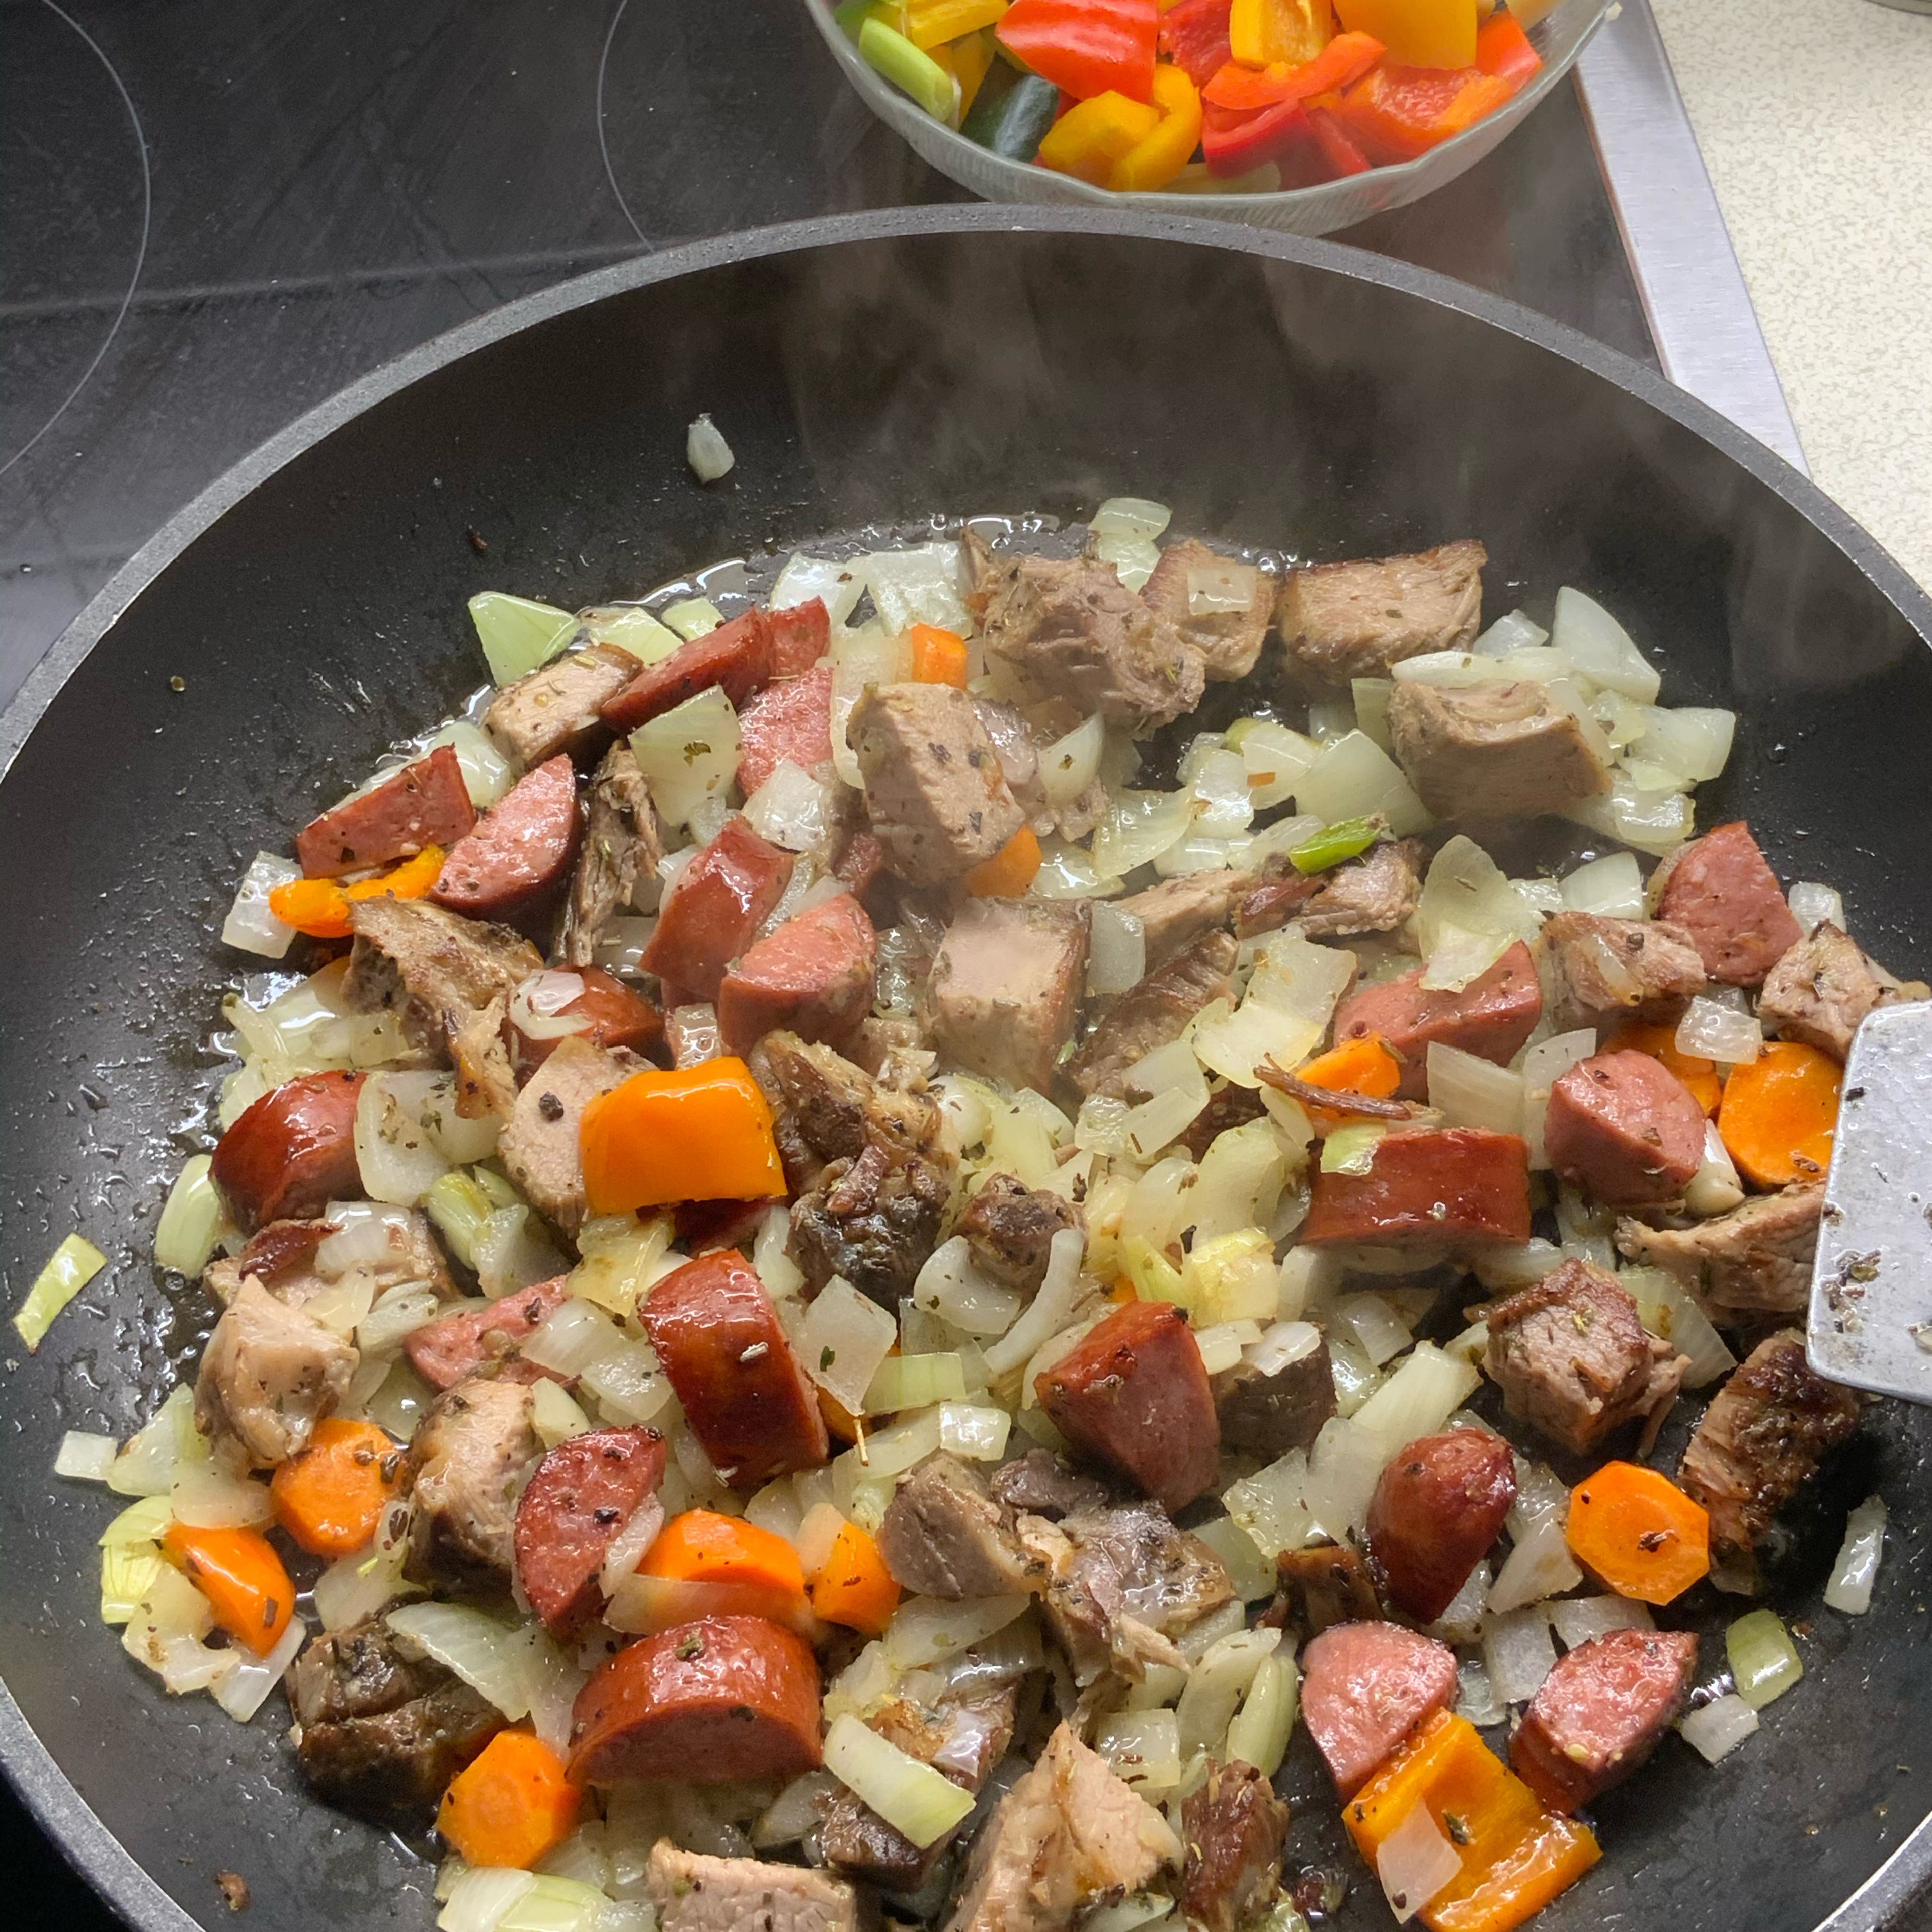 Nach 3-4 Minuten Zwiebel, Karotten, Braten- und Cabanossistücke in der Pfanne vermengen....